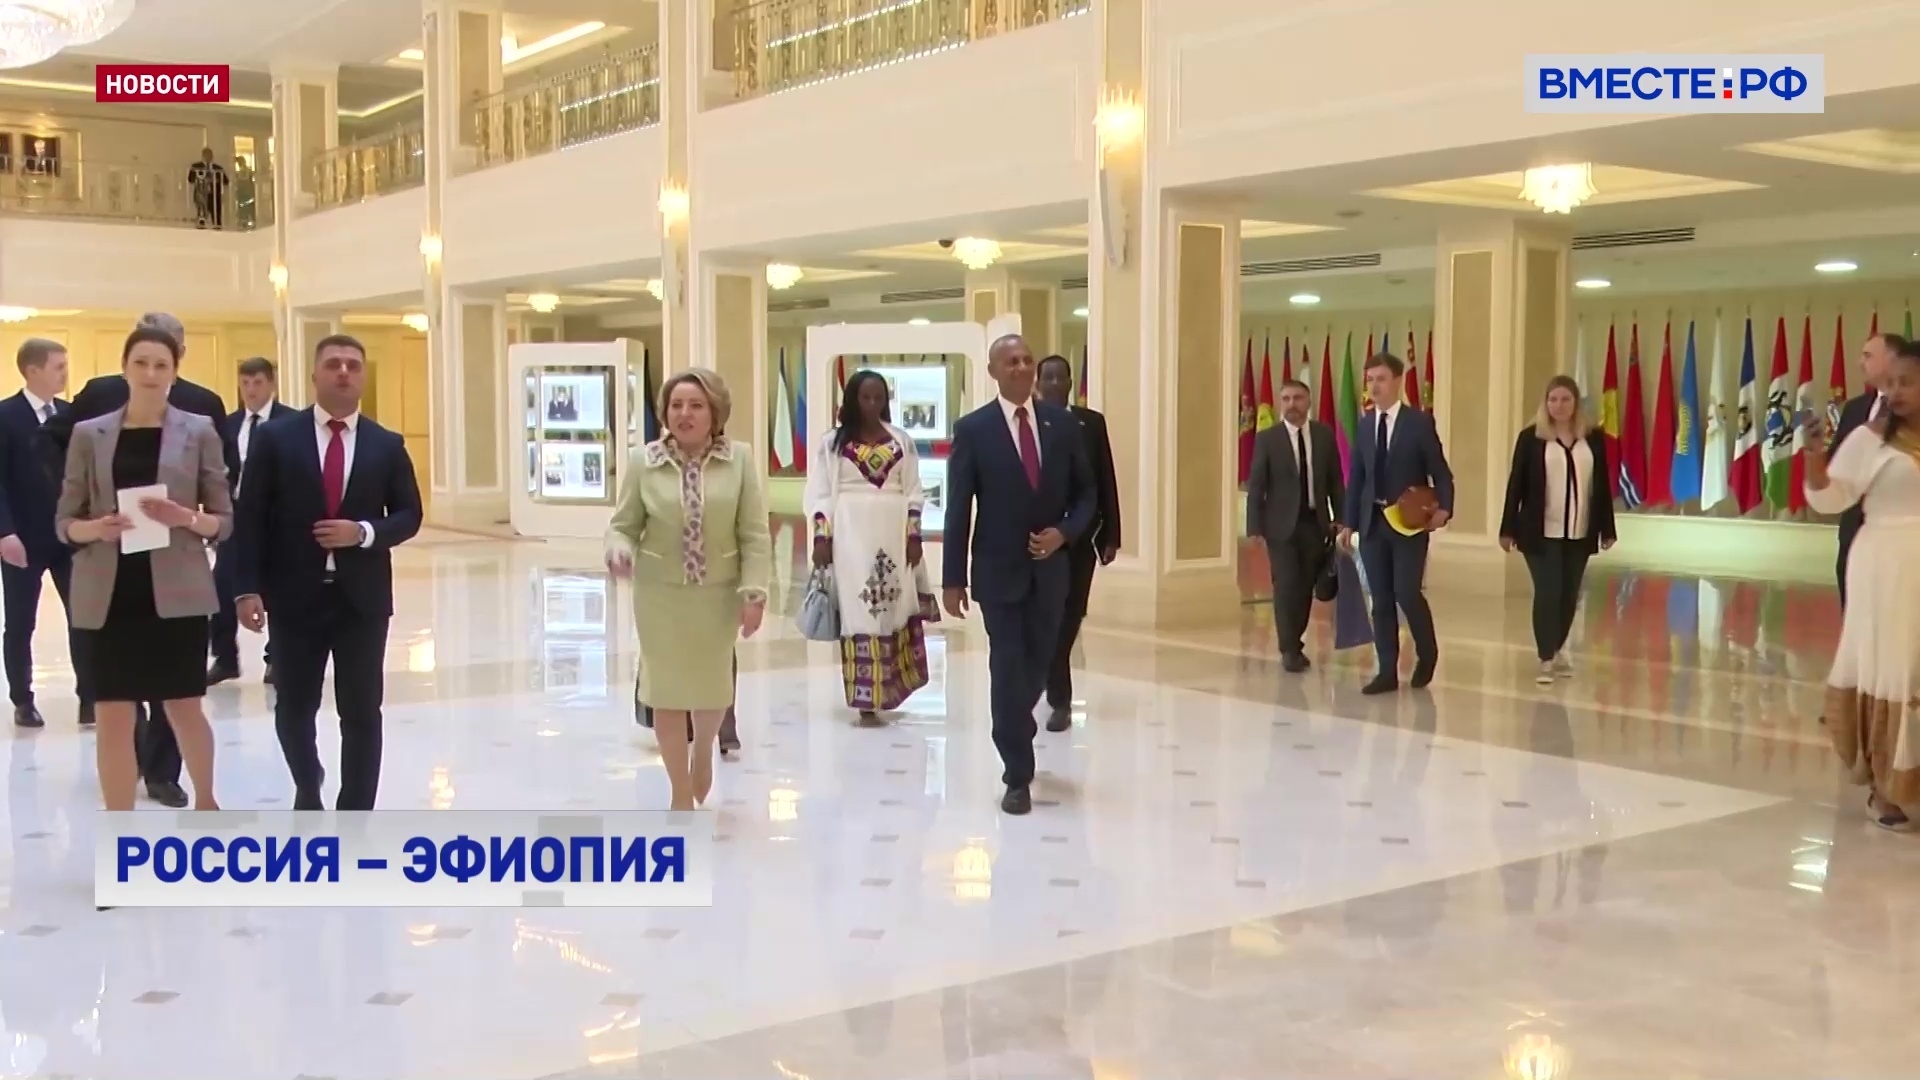 Эфиопия - один из ключевых партнеров России в Африке, заявила Матвиенко